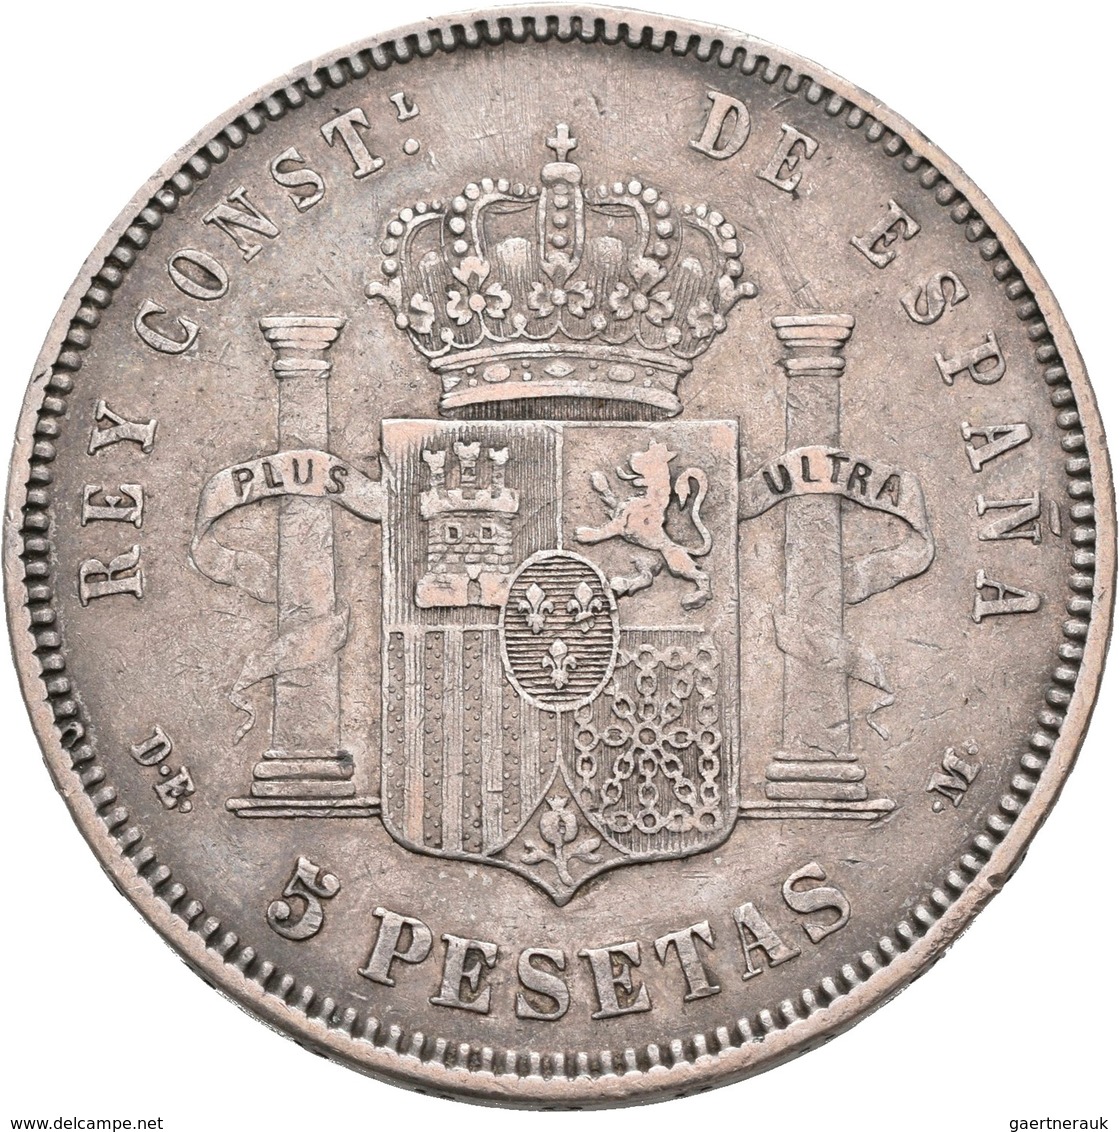 Spanien: Lot 8 Stück; 8 x 5 Pesetas: 1870, 1871 (2x), 1877, 1885, 1889, 1893, 1897, sehr schön, sehr